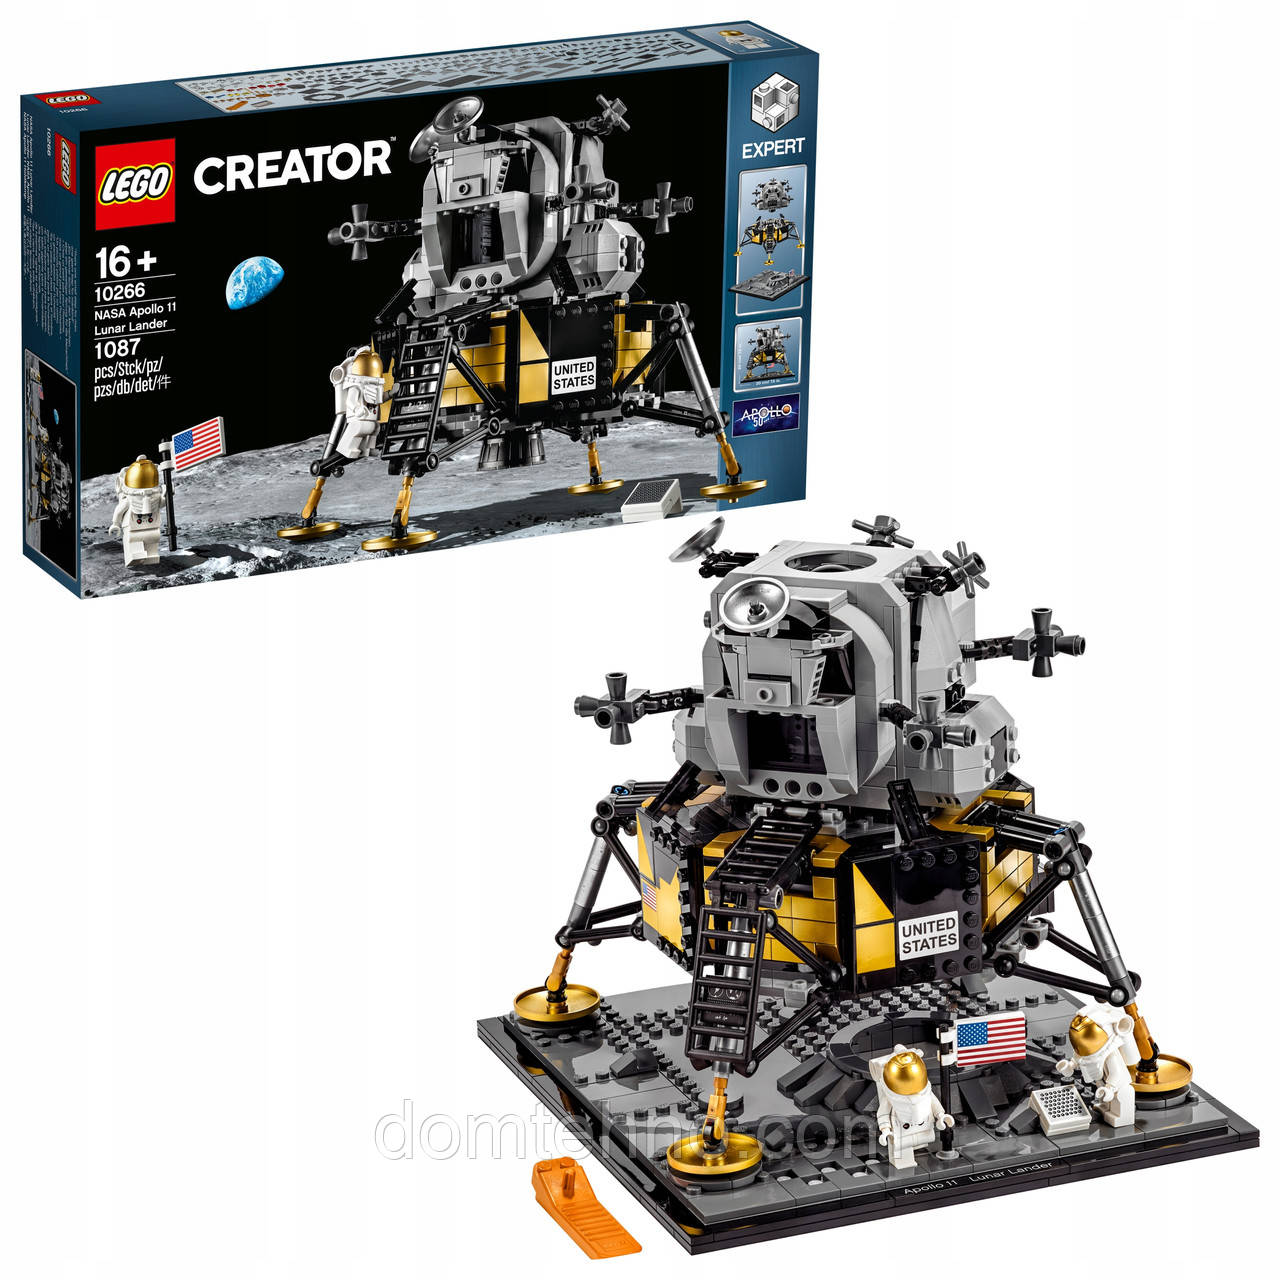 LEGO Creator 10266 Місячний посадковий апарат APOLLO NASA, фото 1